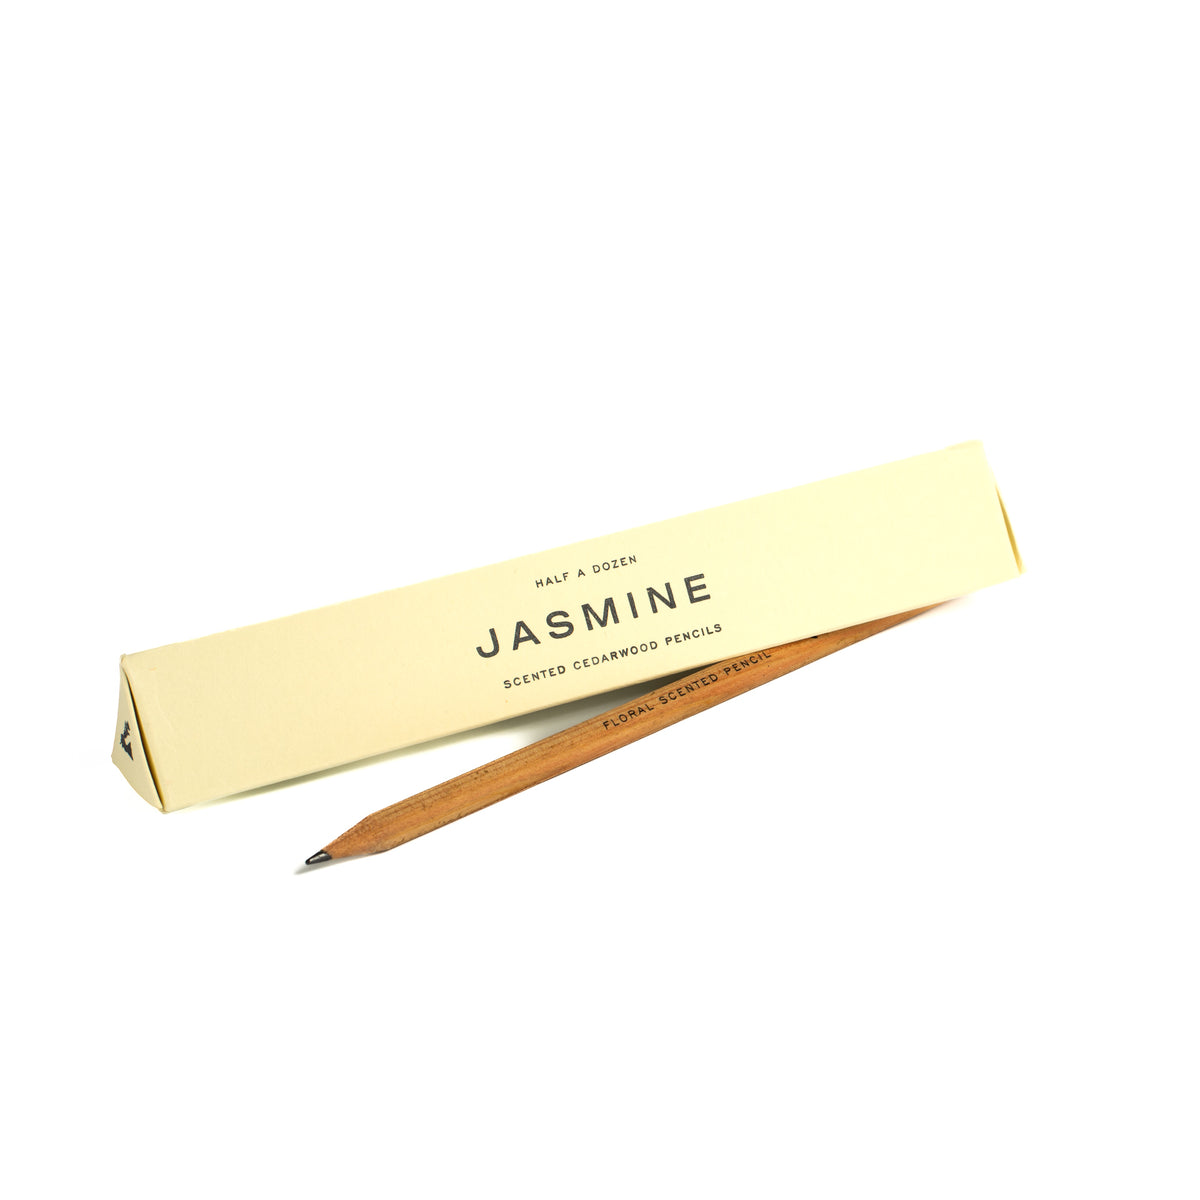 Jasmine scented pencils